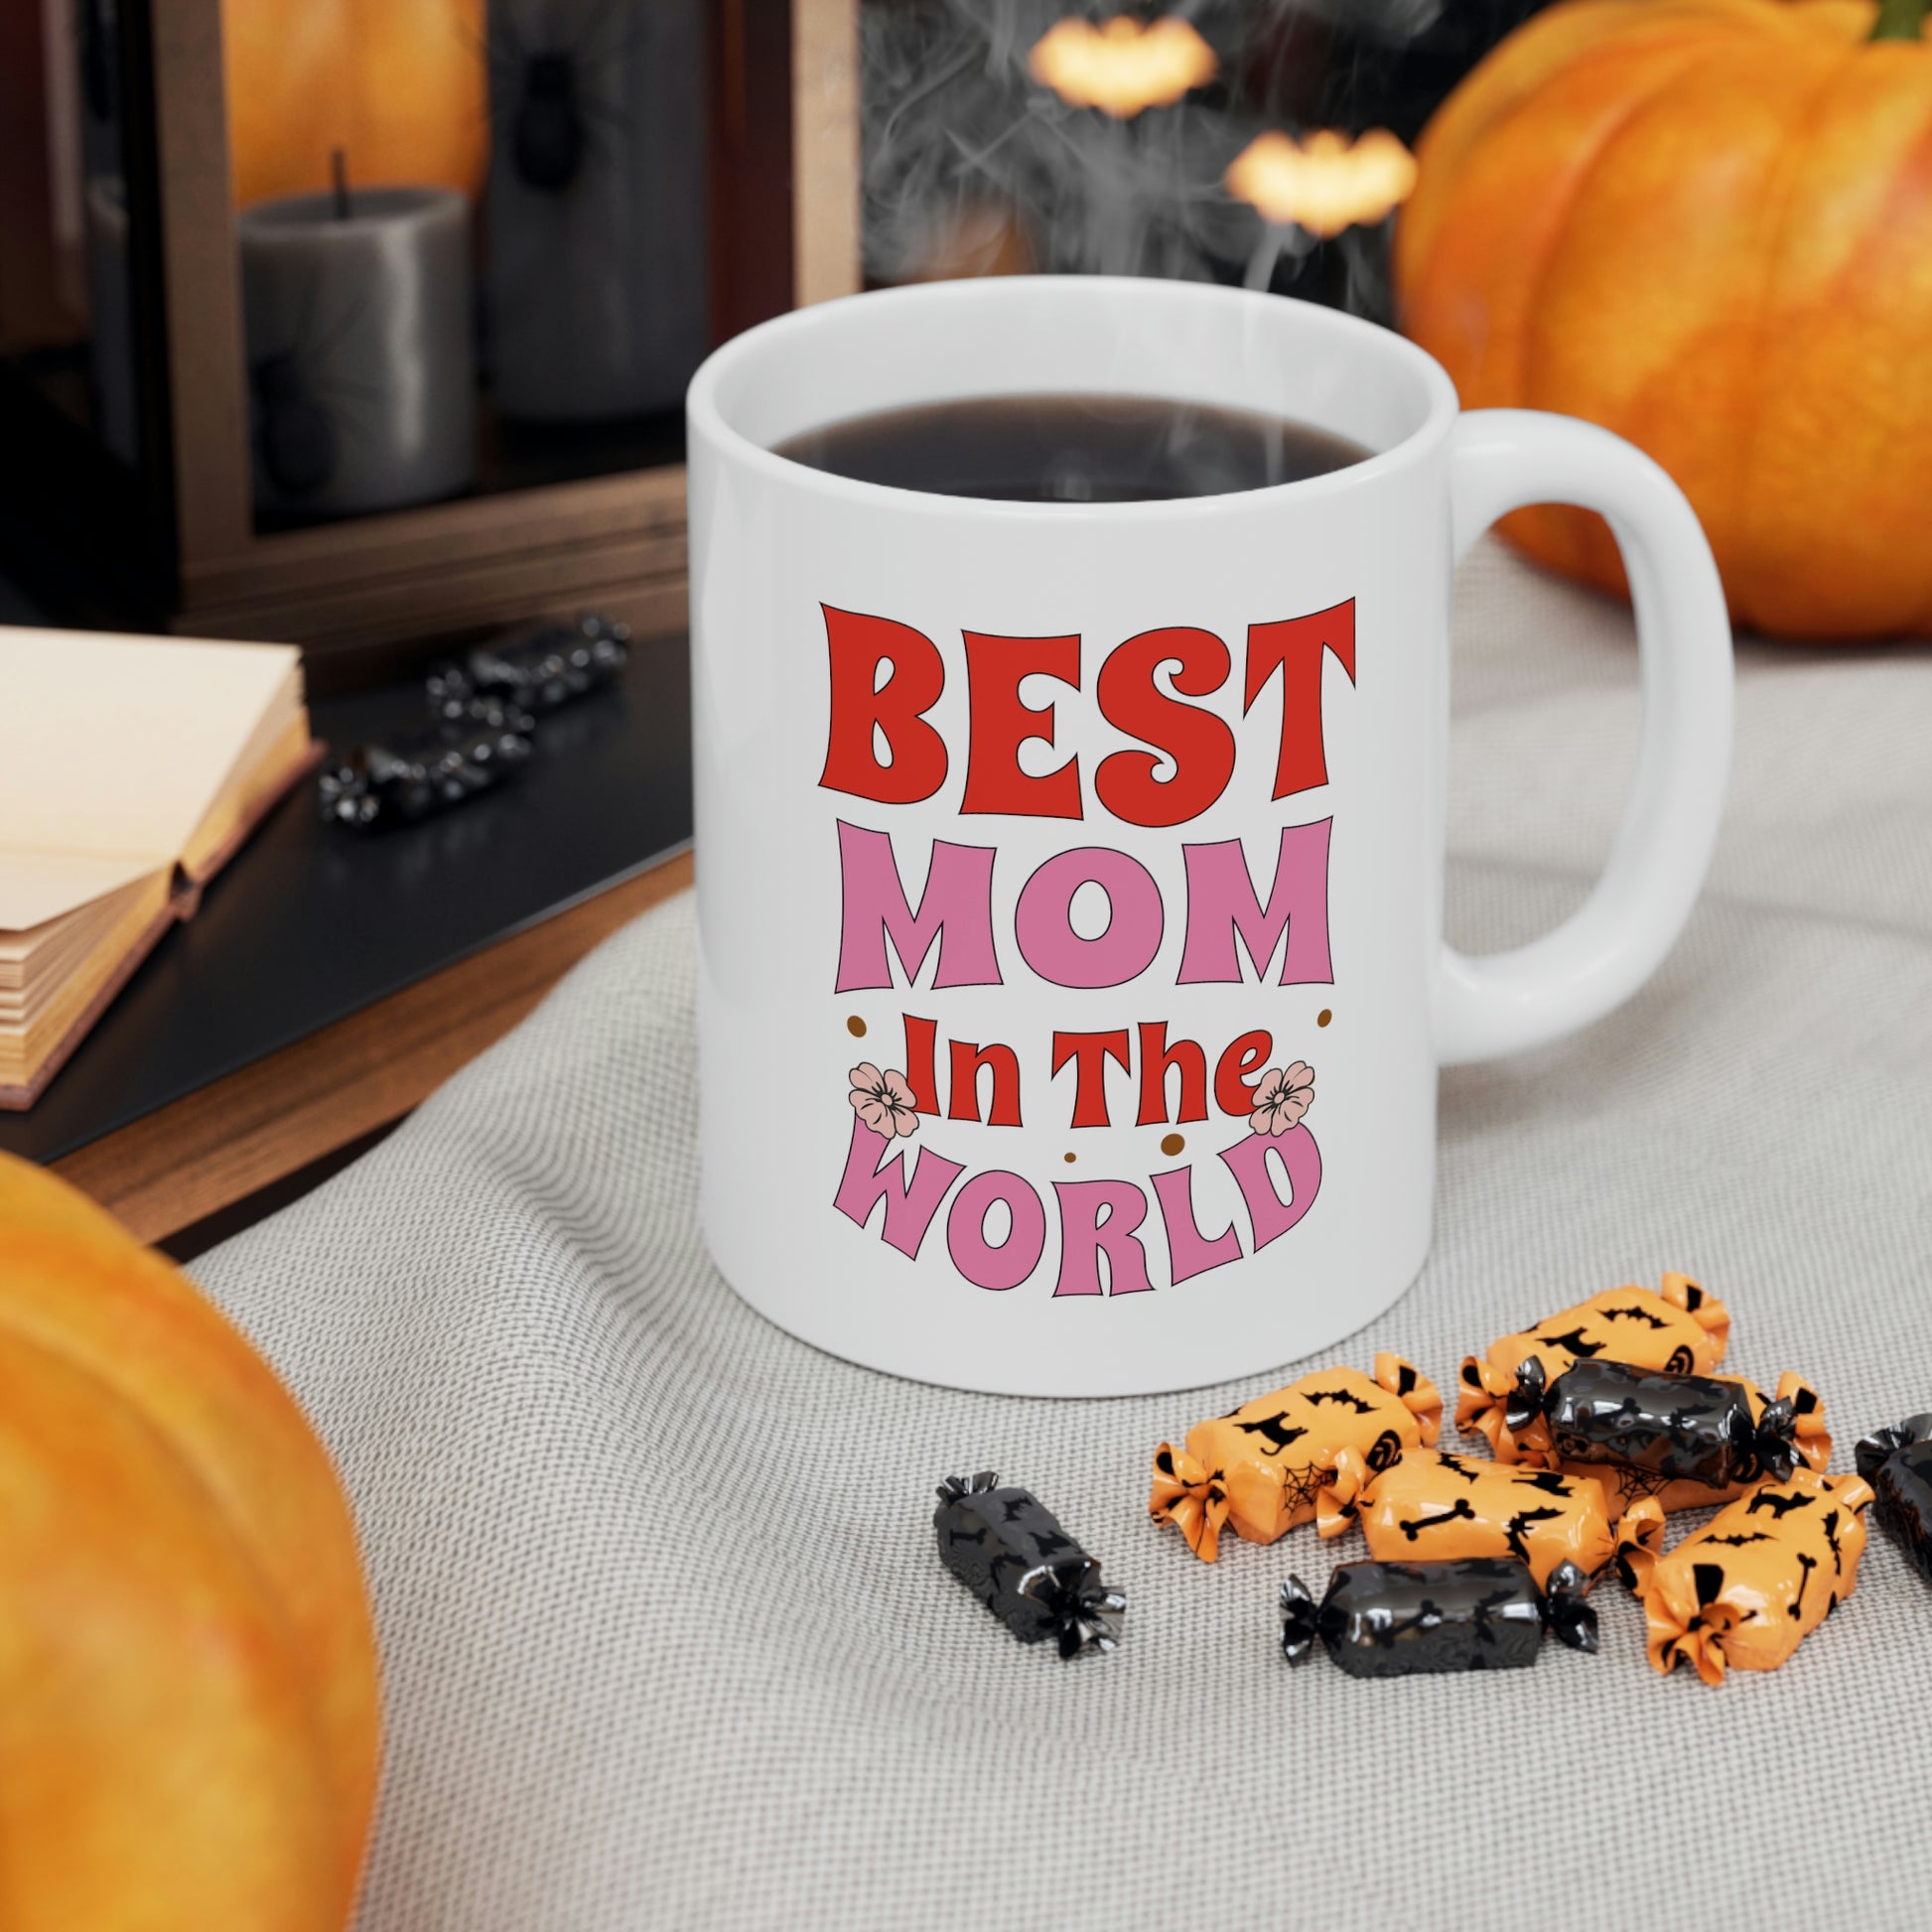 World's Best Mom Office Mug Office Christmas Gift 11 Oz or 15 Oz